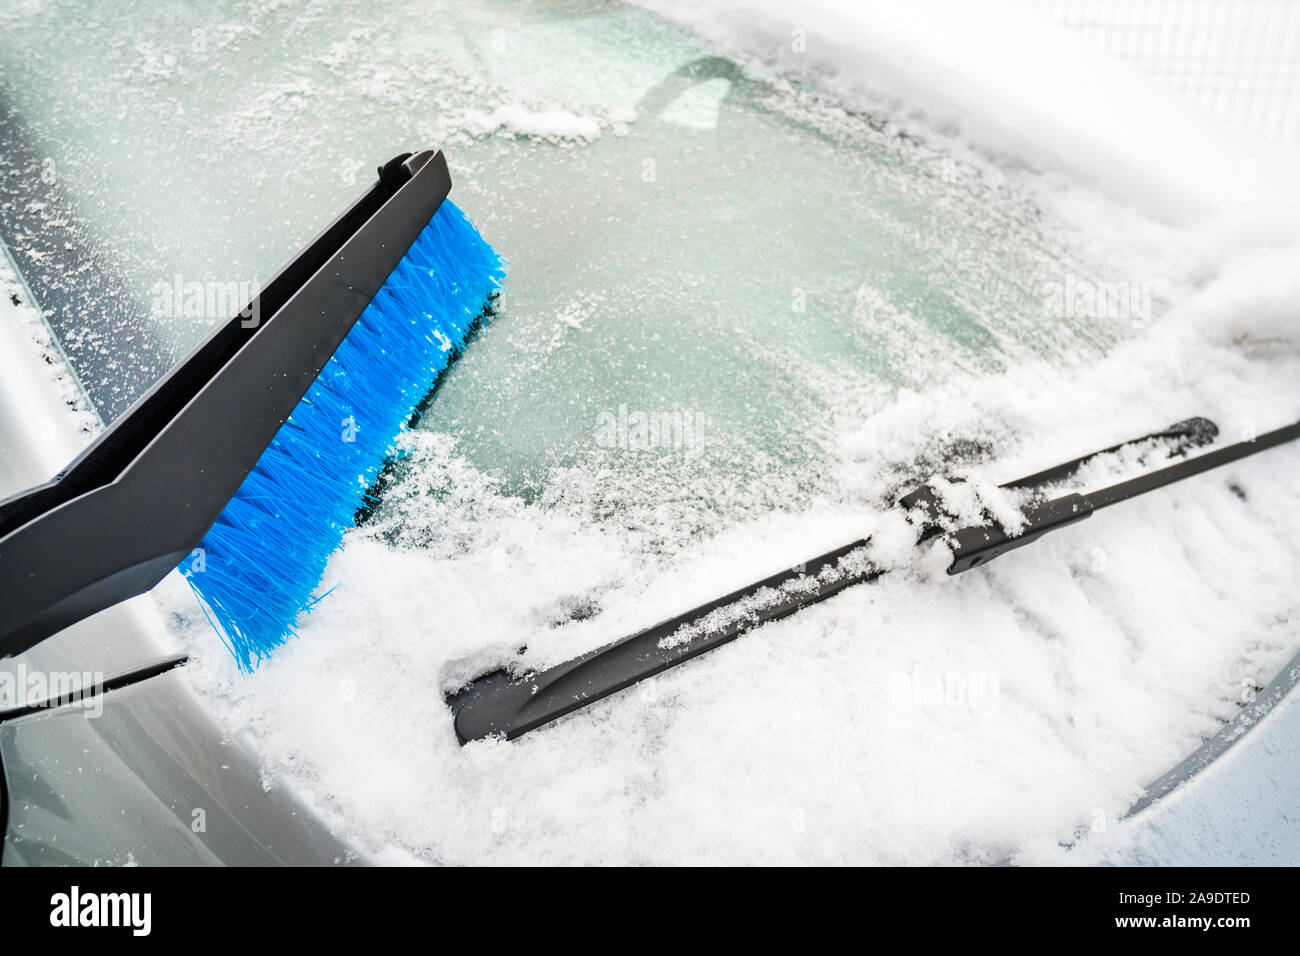 Auto Reinigung von Schnee mit Stroh Besen Stockfotografie - Alamy